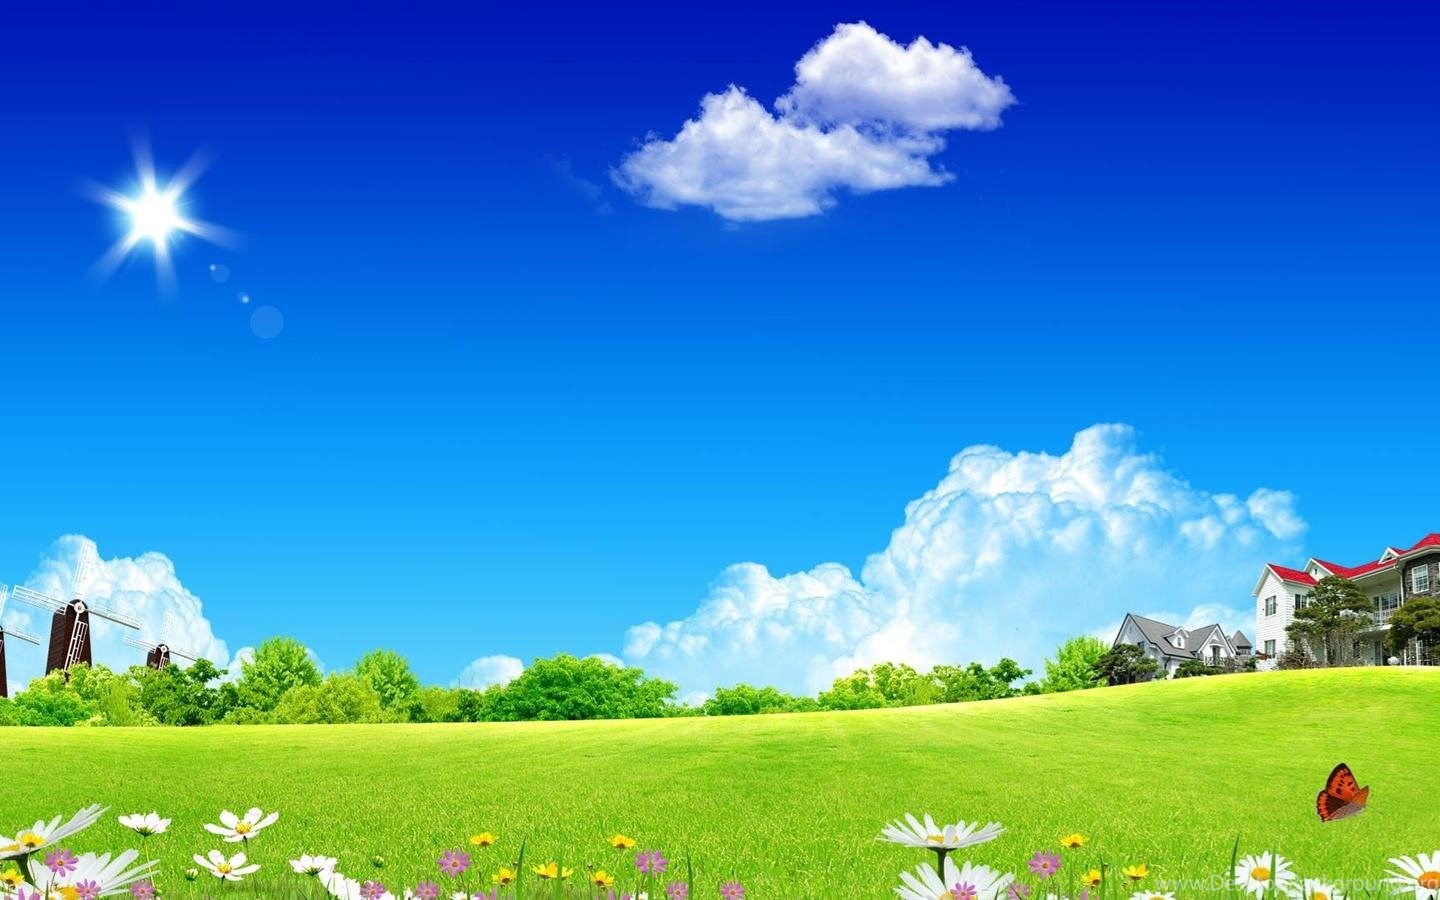 Gardens Wallpaper: 1440x900 Dream Garden Of Summer Scenery Desktop. Desktop Background